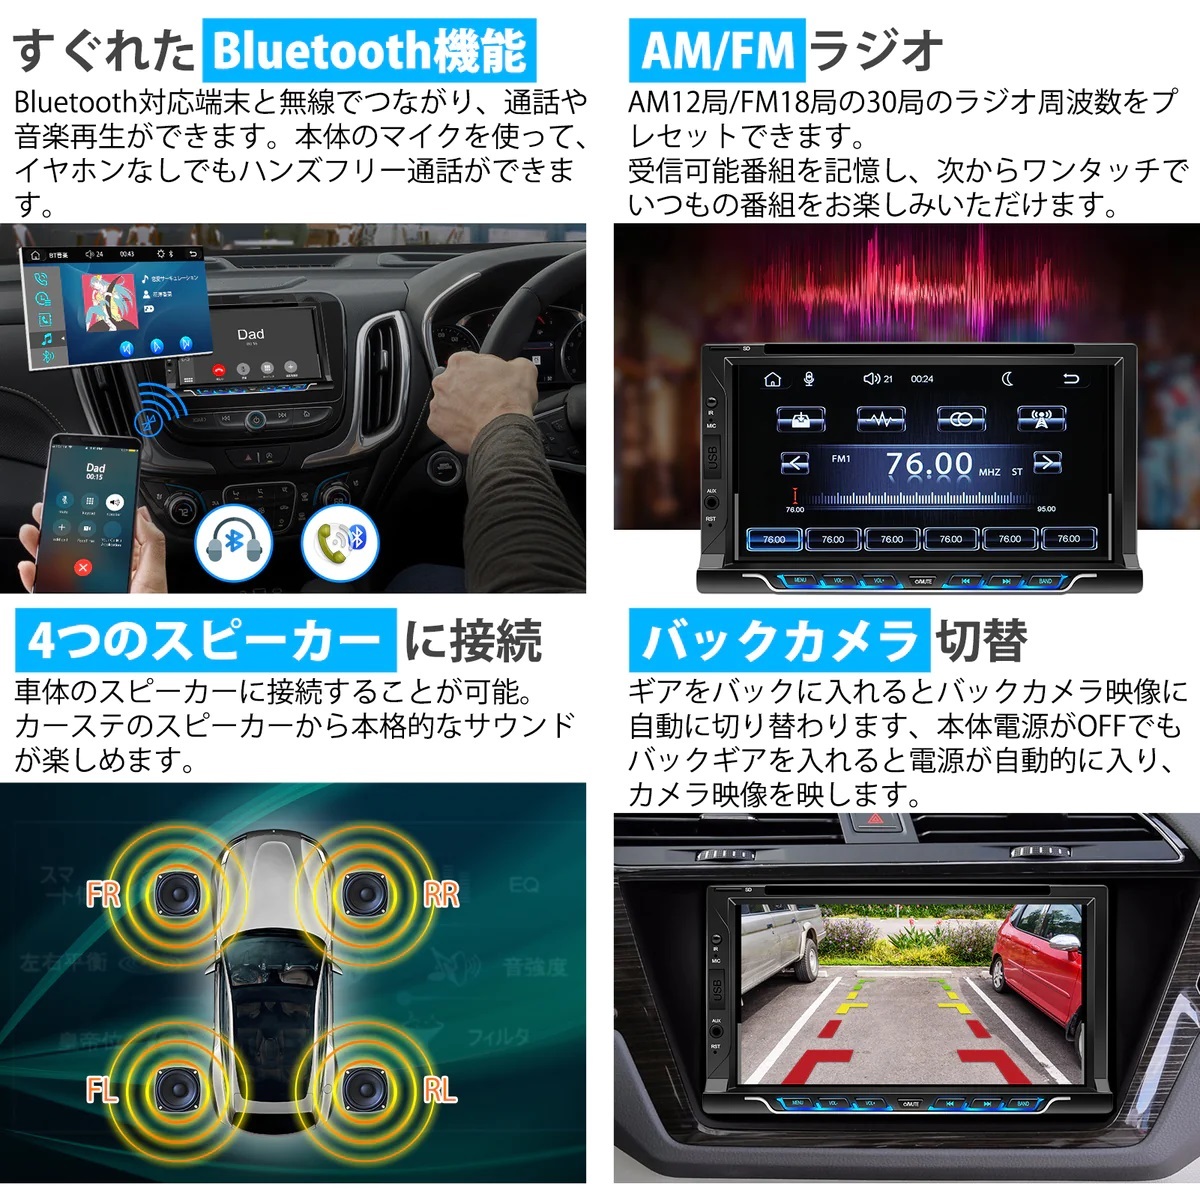 PRA703 7 дюймовый 2DIN DVD плеер Car Audio IPS электростатический тип сенсорный экран беспроводной Apple CarPlay беспроводной AndroidAuto Bluetooth